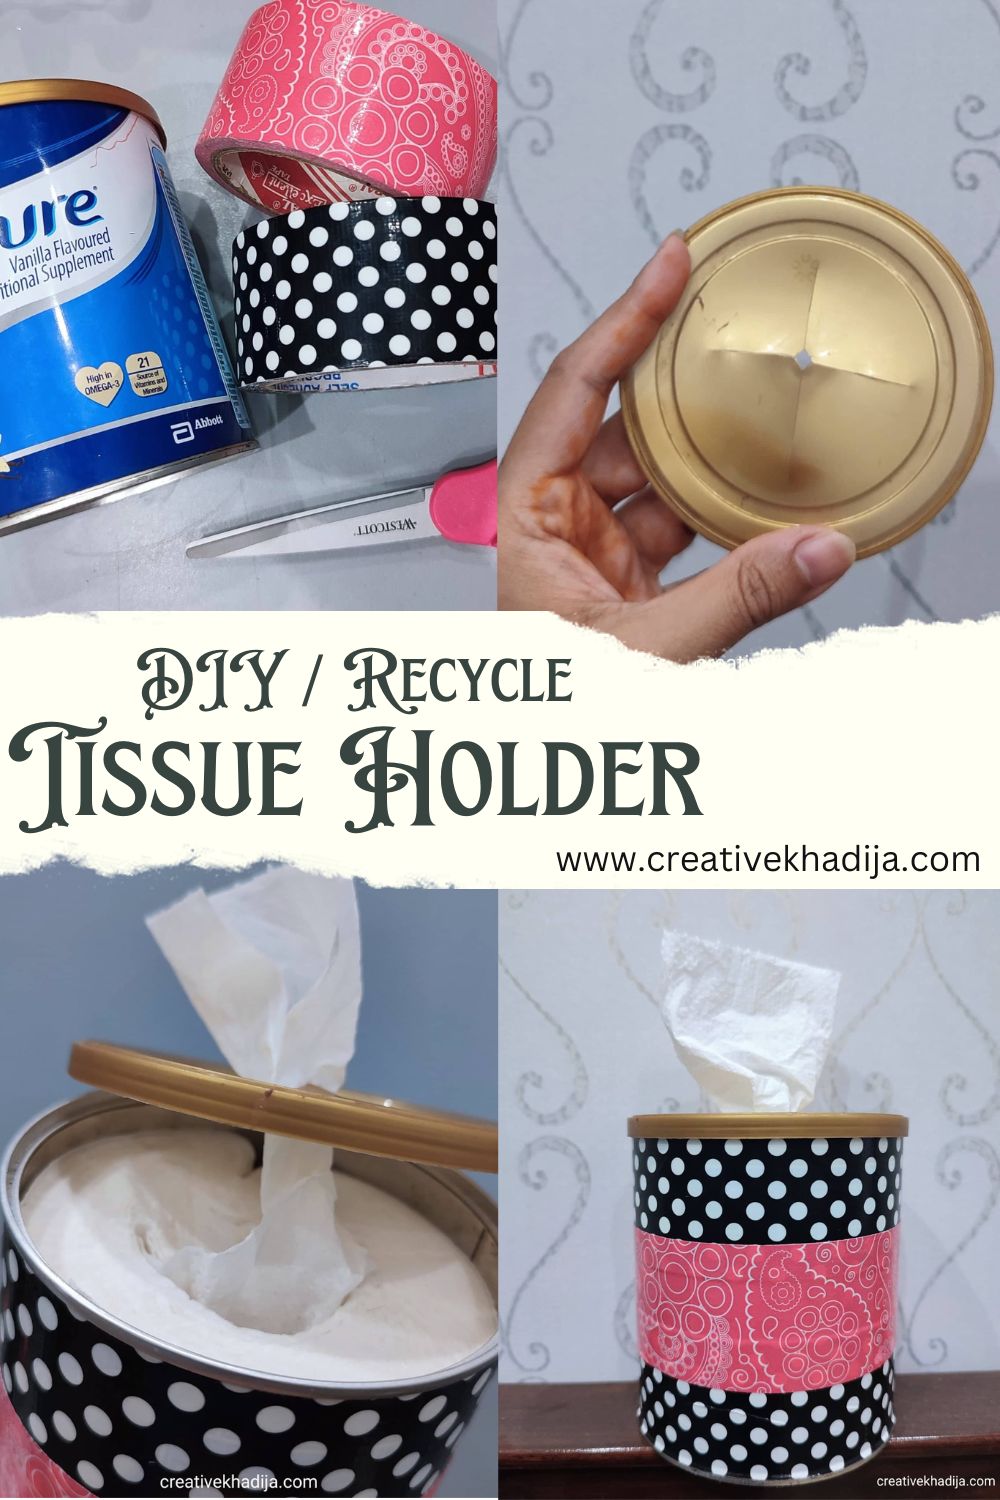 TOILET PAPER HOLDER, Shell Design, Metal Art, Toilet Tissue Holder